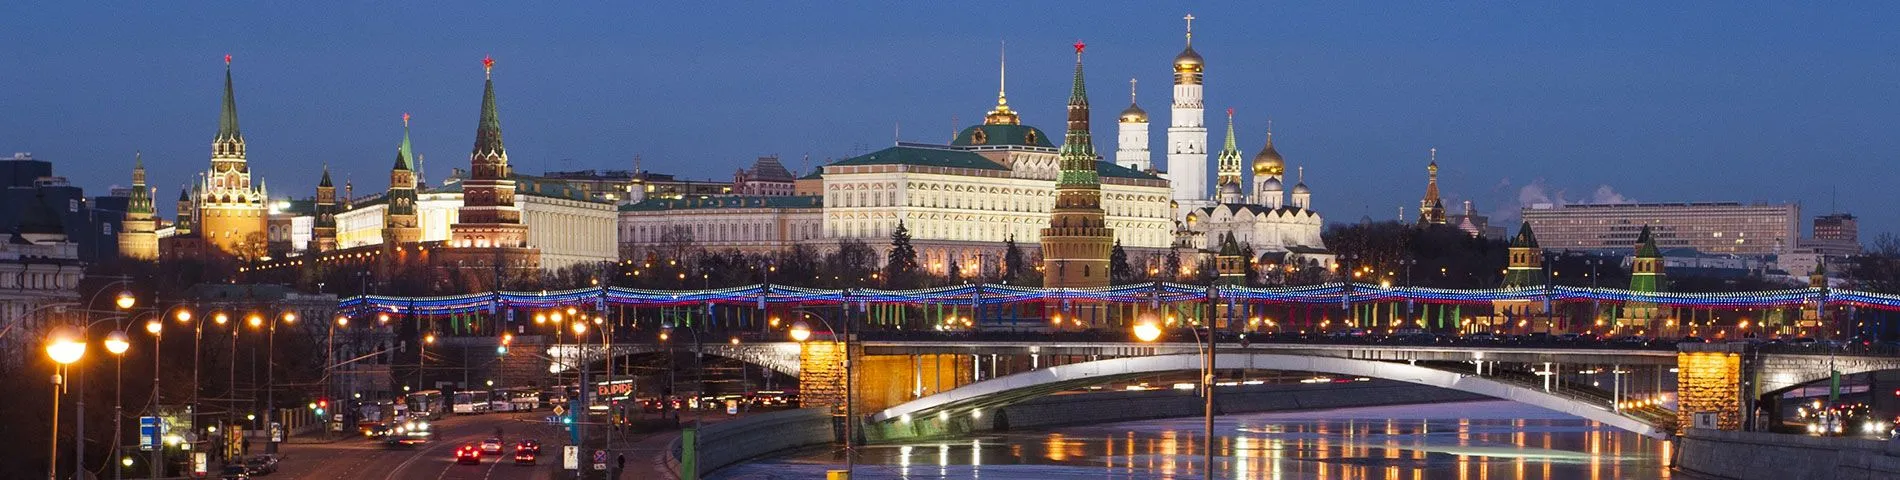 موسكو - الدورة العامة